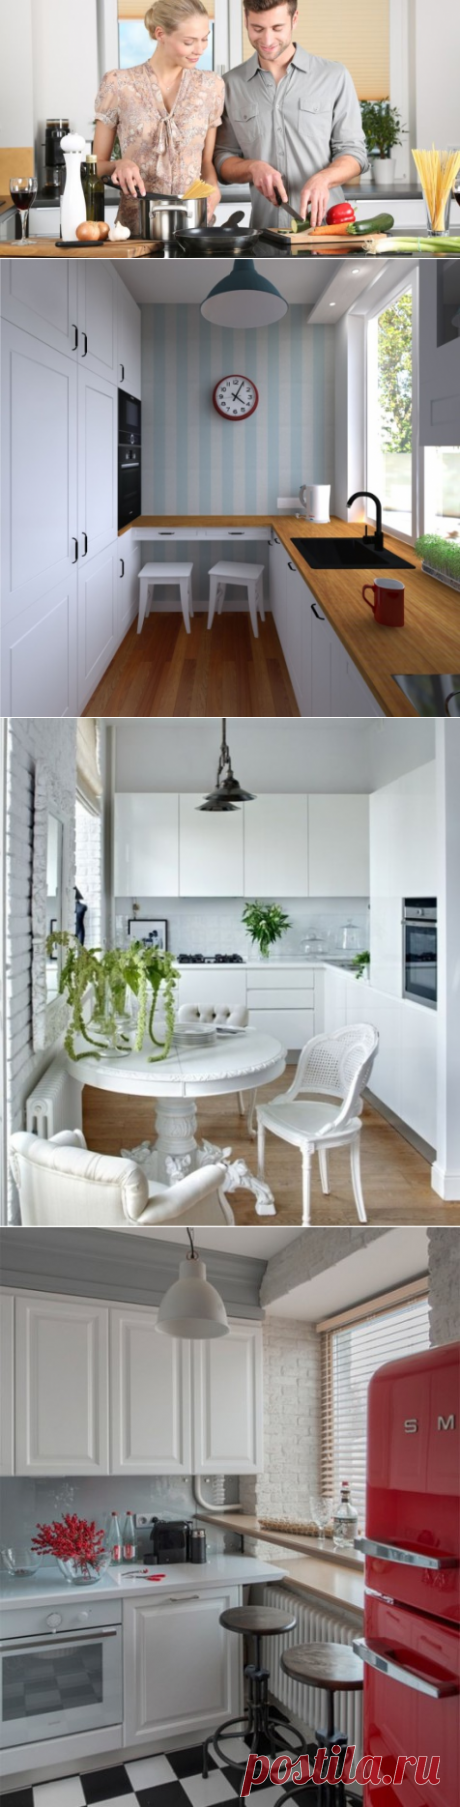 Как обустроить маленькую кухню? Дизайн на 5 кв. м. | Дом и семья